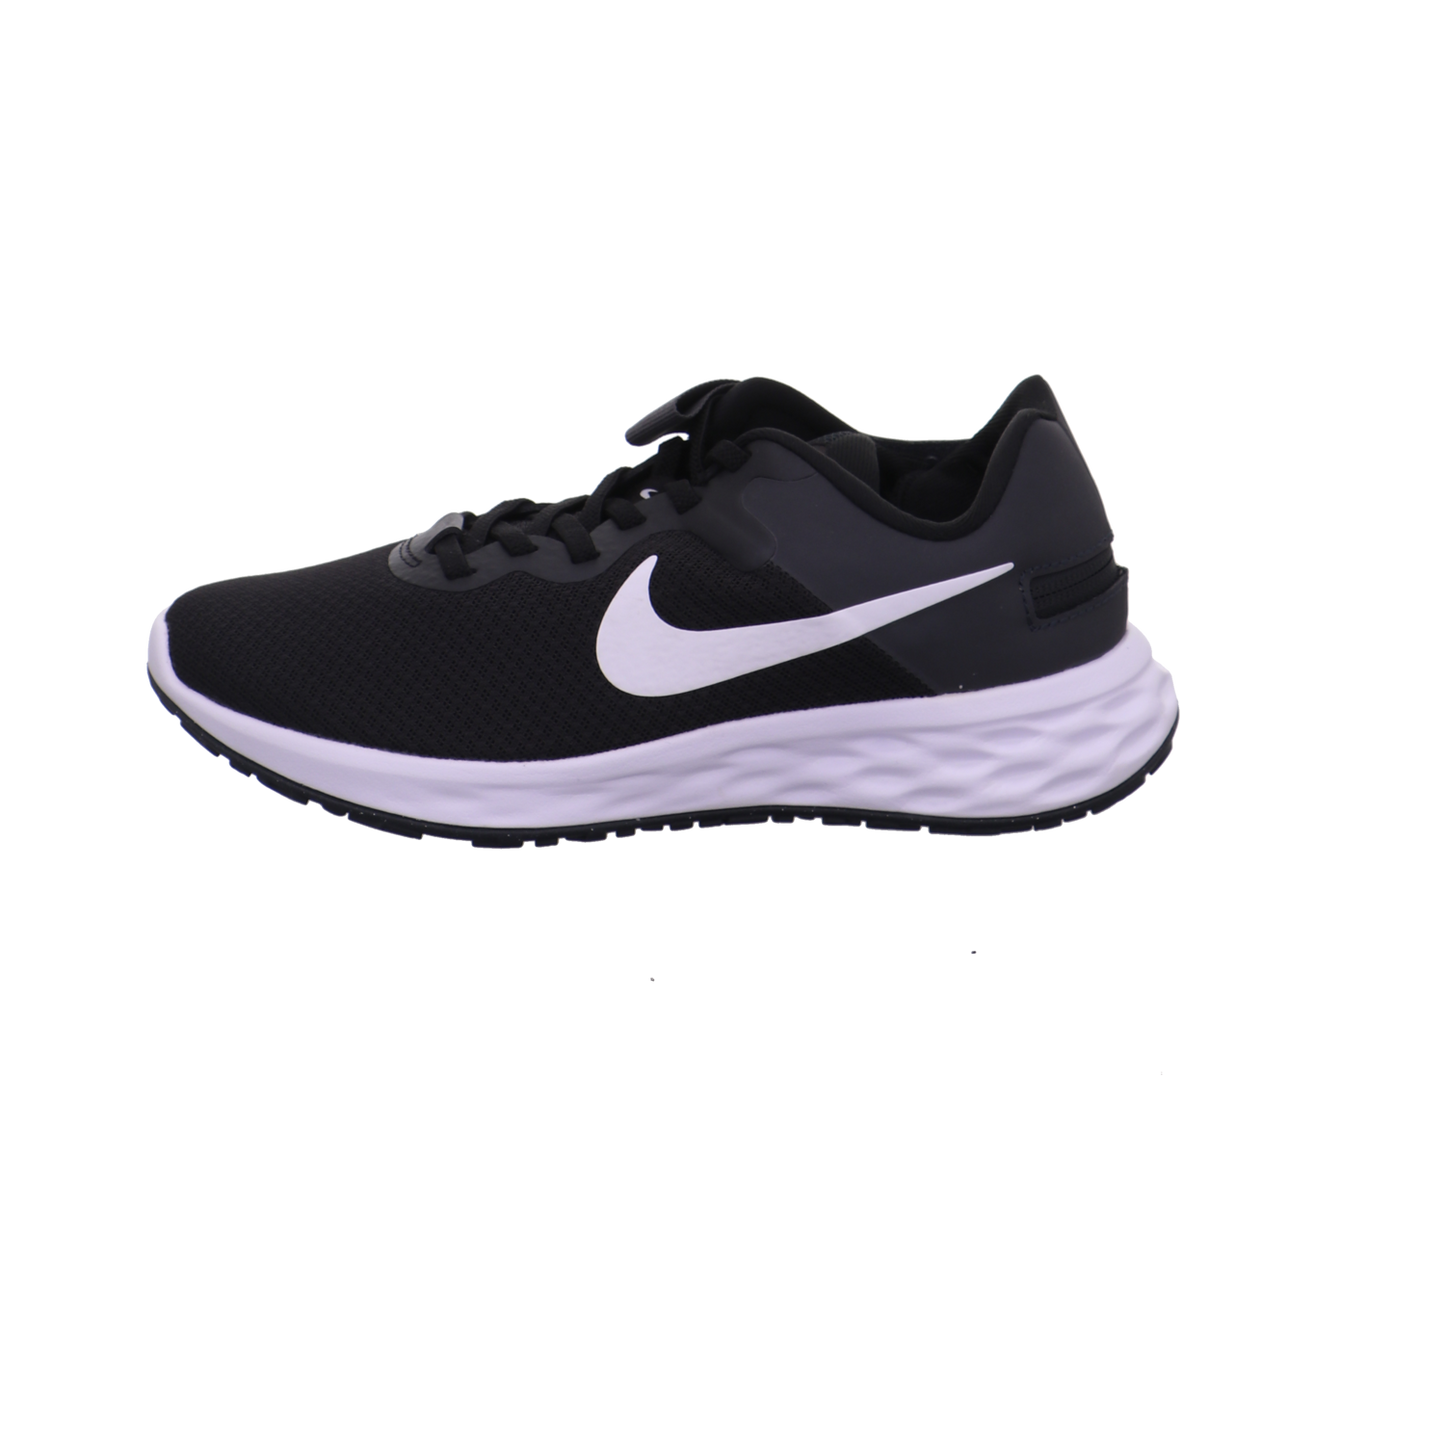 Nike Training und Hallenschuhe schwarz kombi Bild1